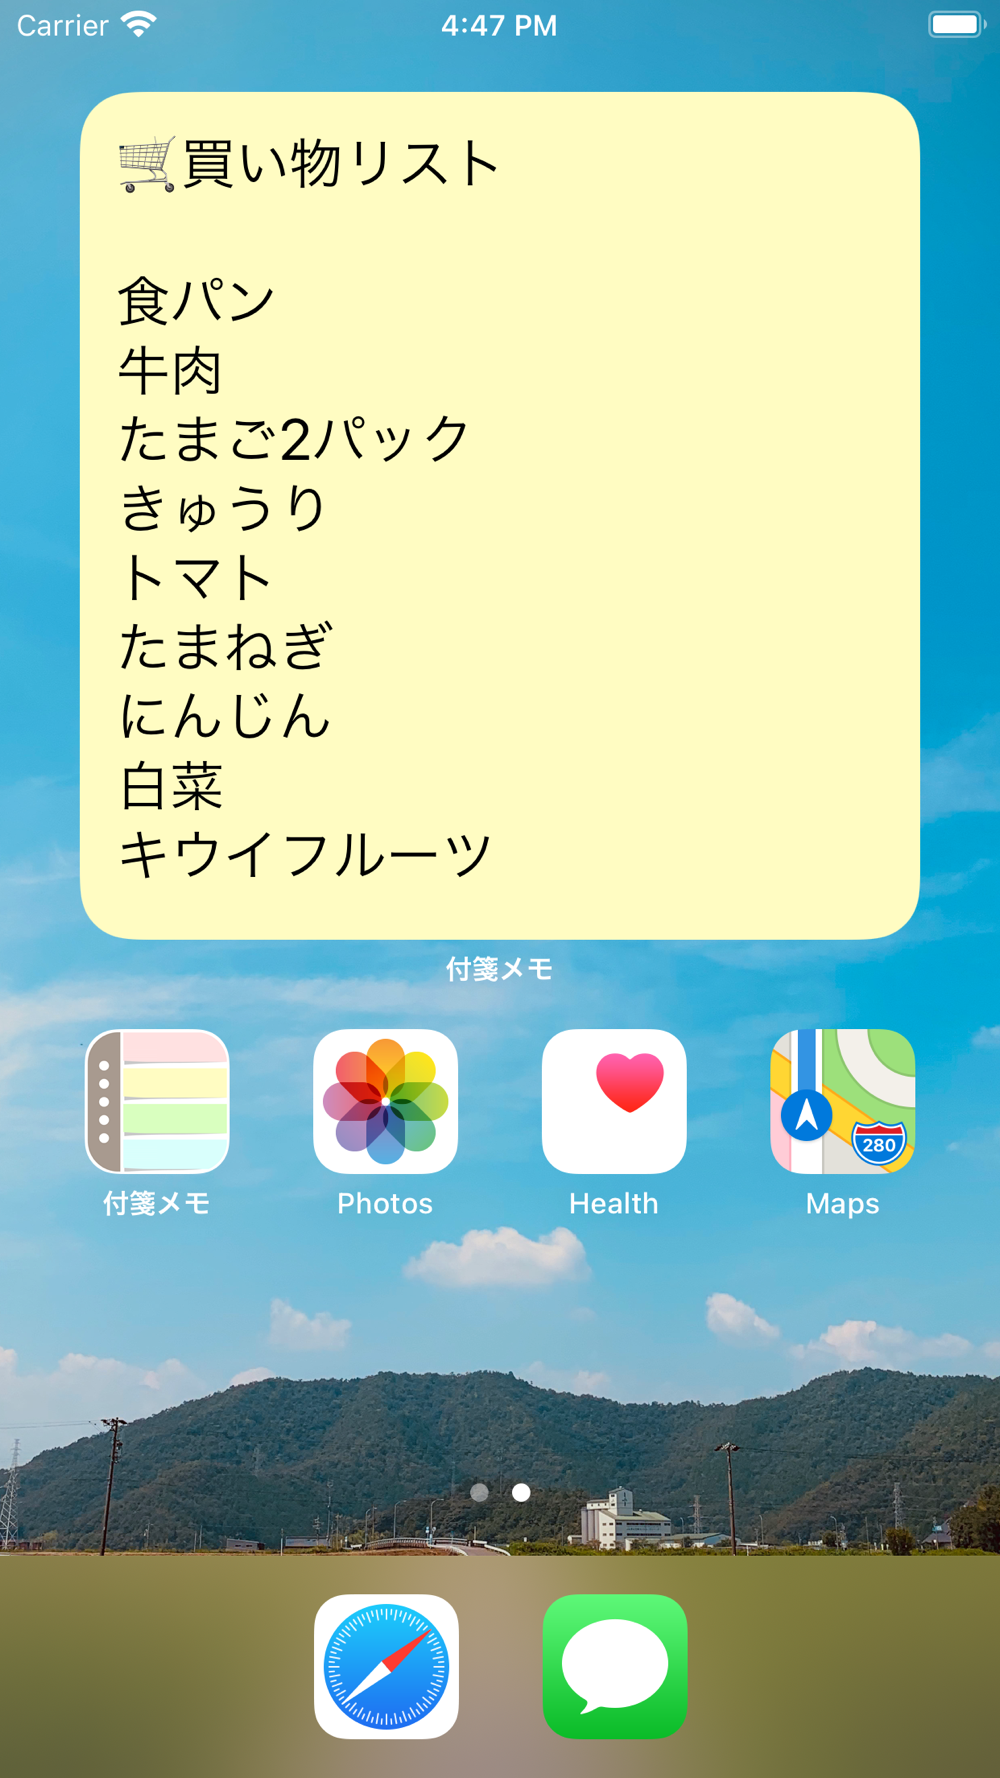 付箋メモ帳型todoリスト メモ ウィジェット Free Download App For Iphone Steprimo Com